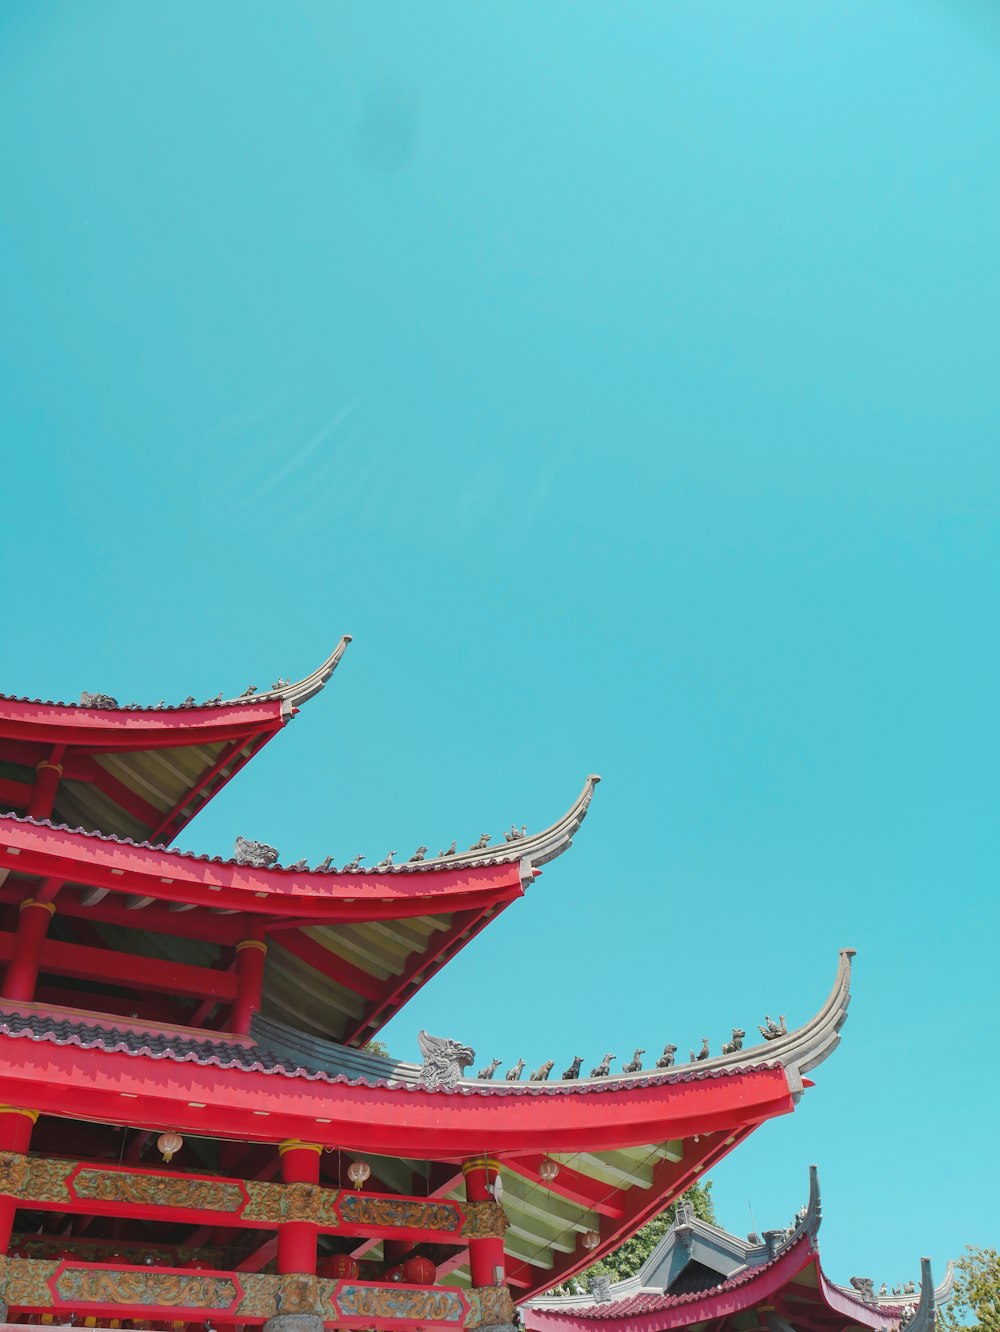 Fotografía de ángulo bajo del edificio rojo y verde de la pagoda bajo un cielo azul tranquilo